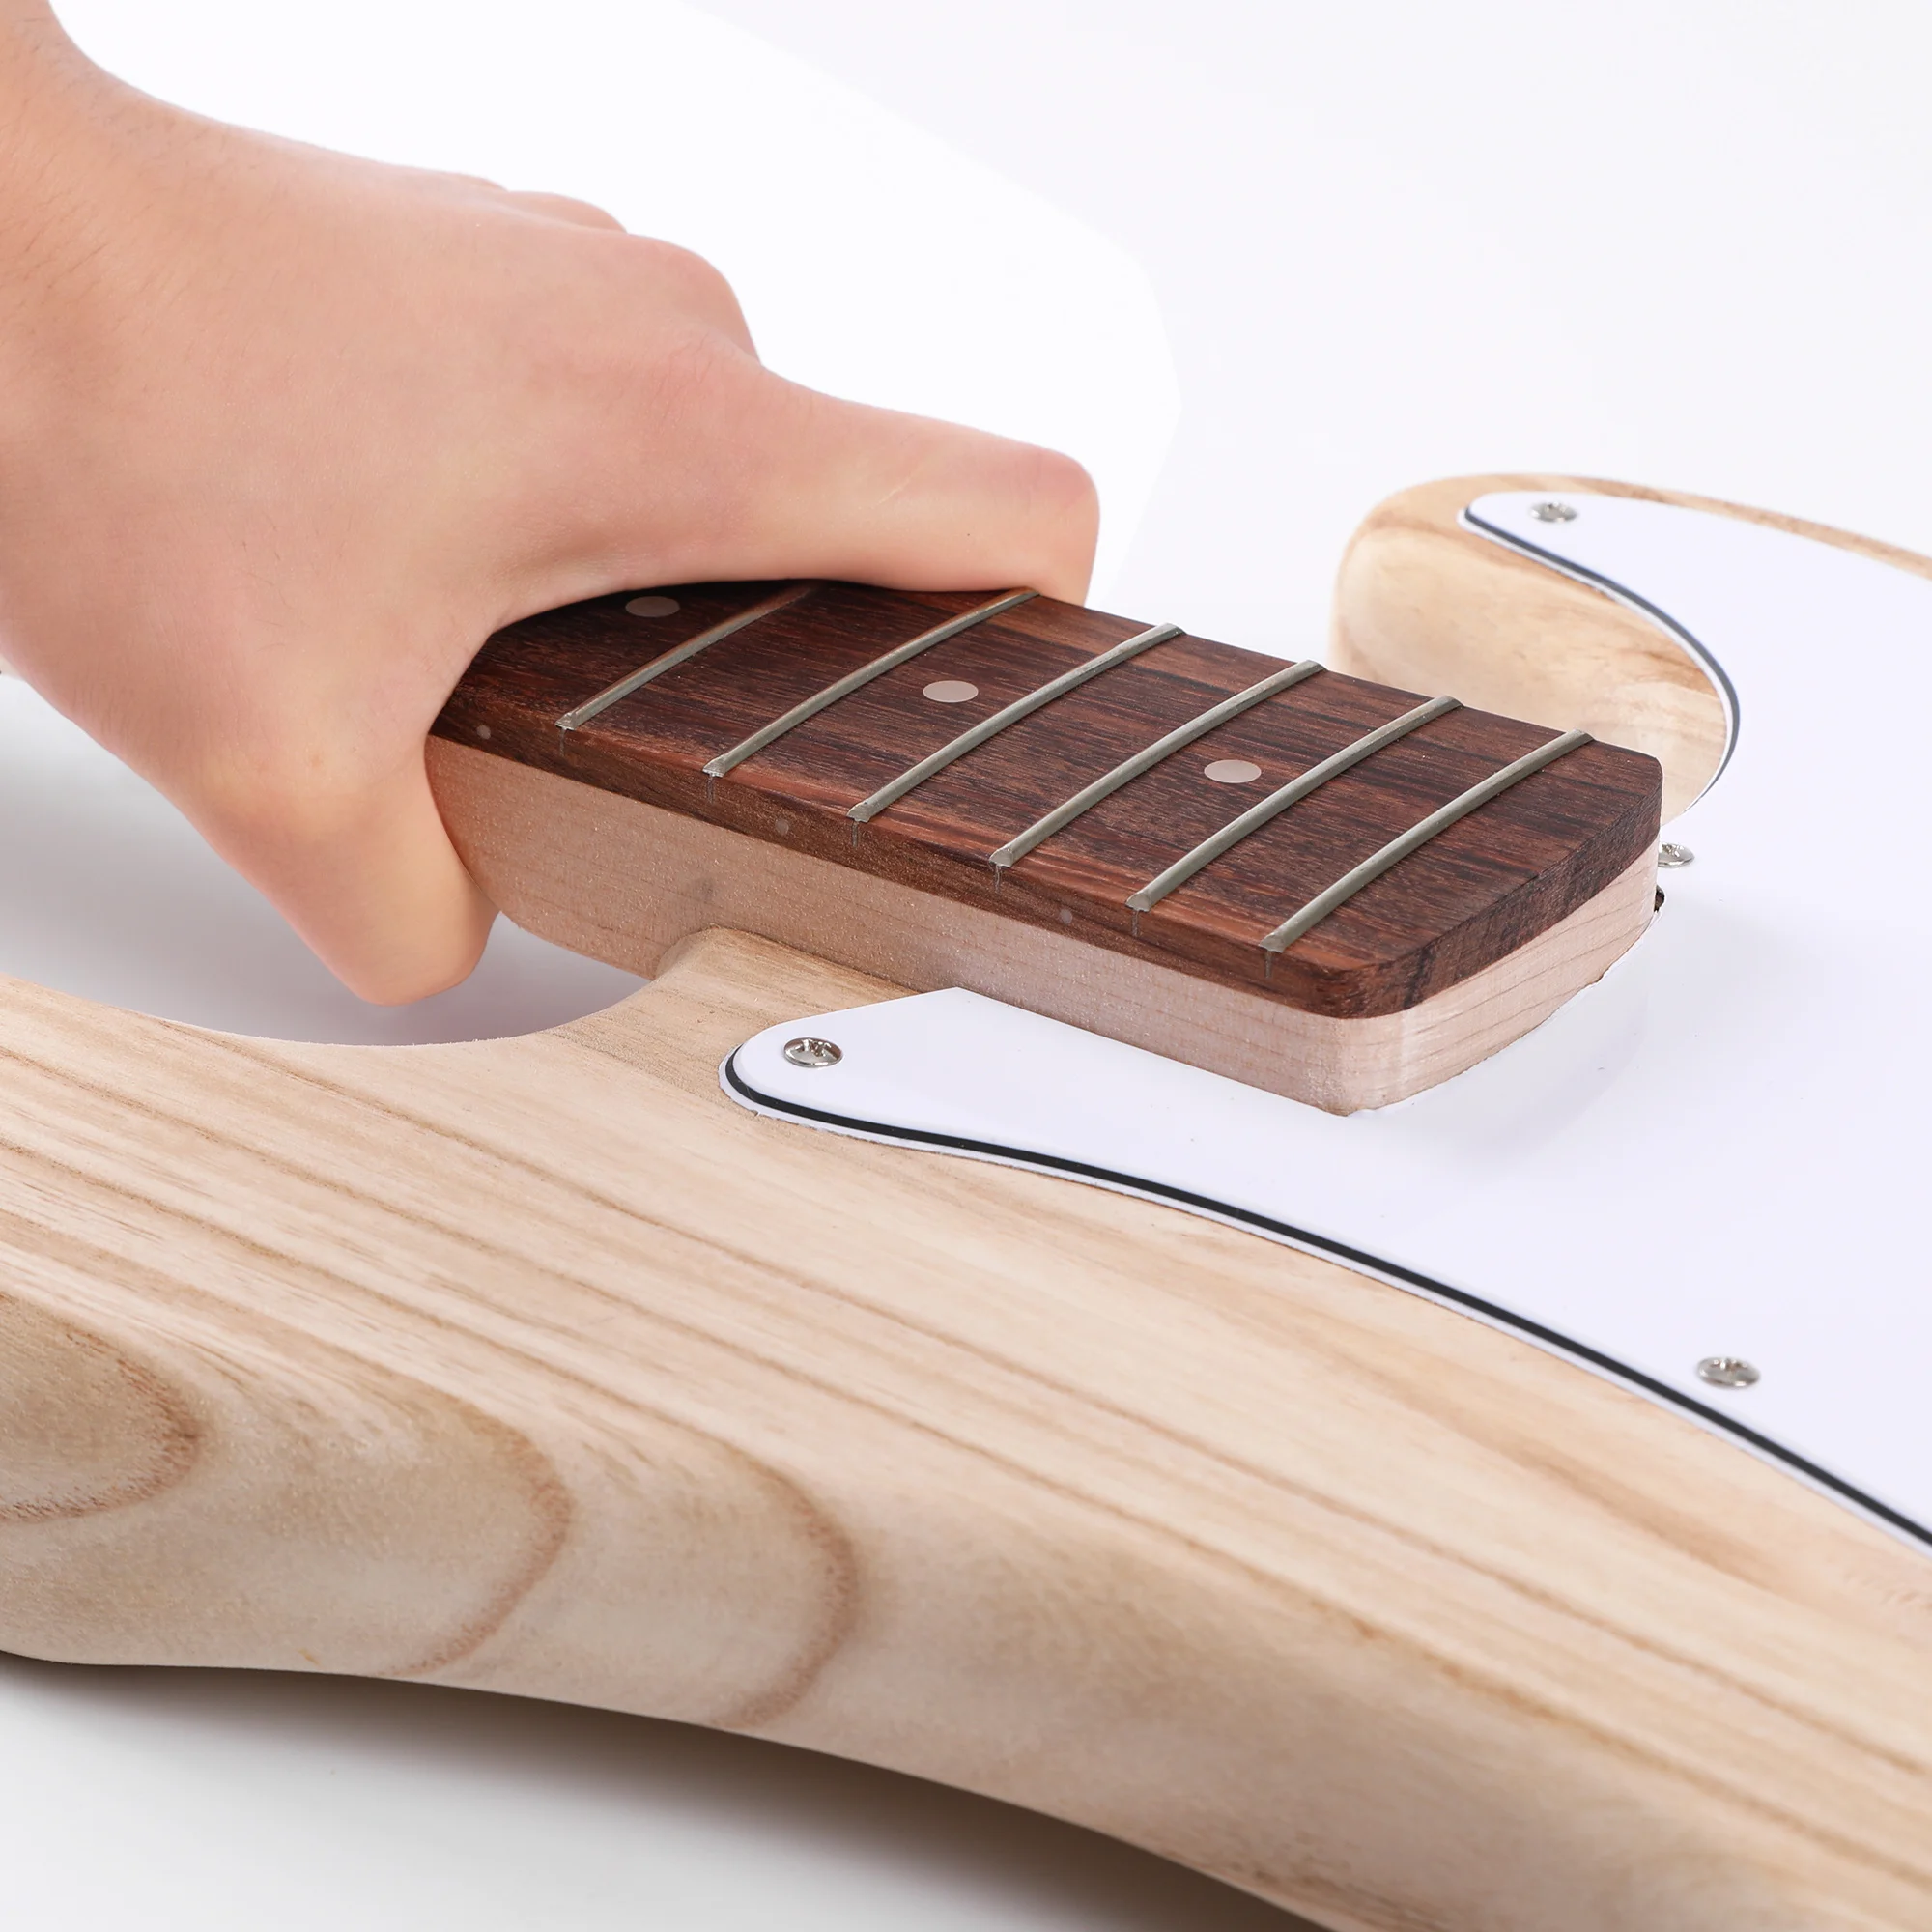 Diy Bass Guitar Kit - Build Your Own Electric Bass With Paulownia